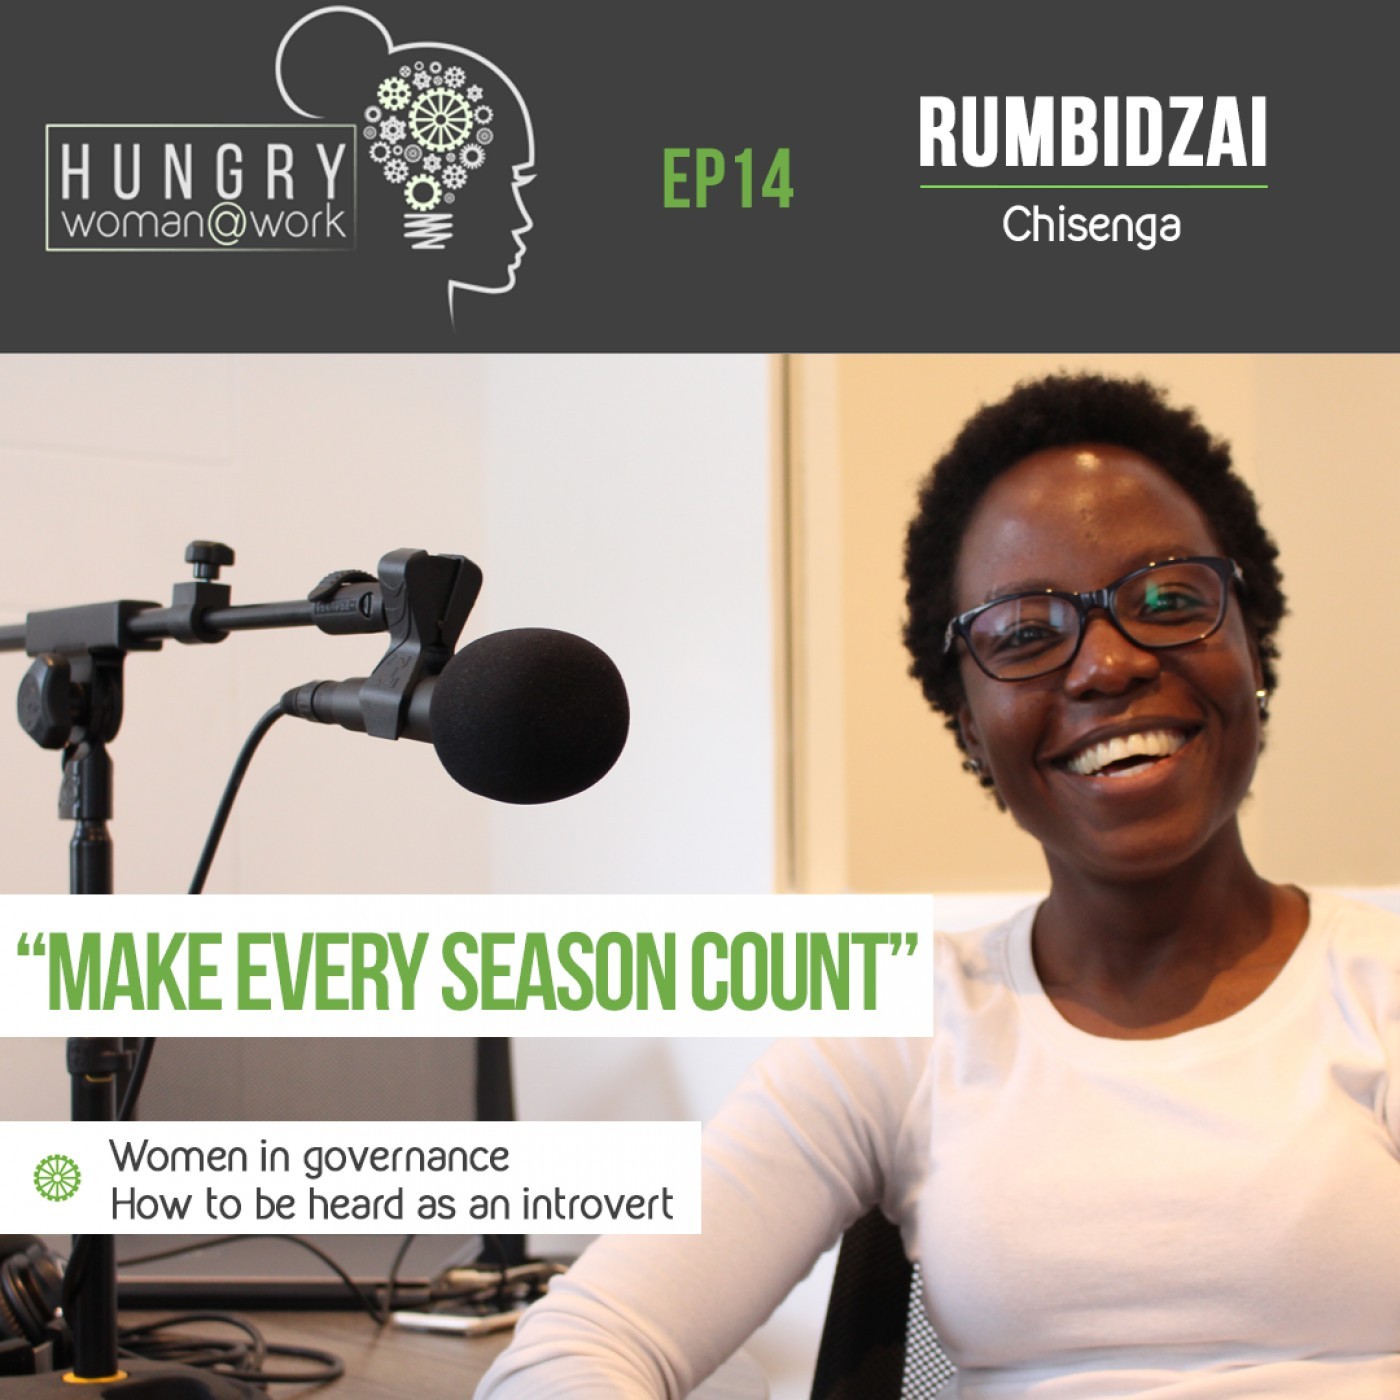 Ep 14: “Make every season count” – Rumbidzai Chisenga